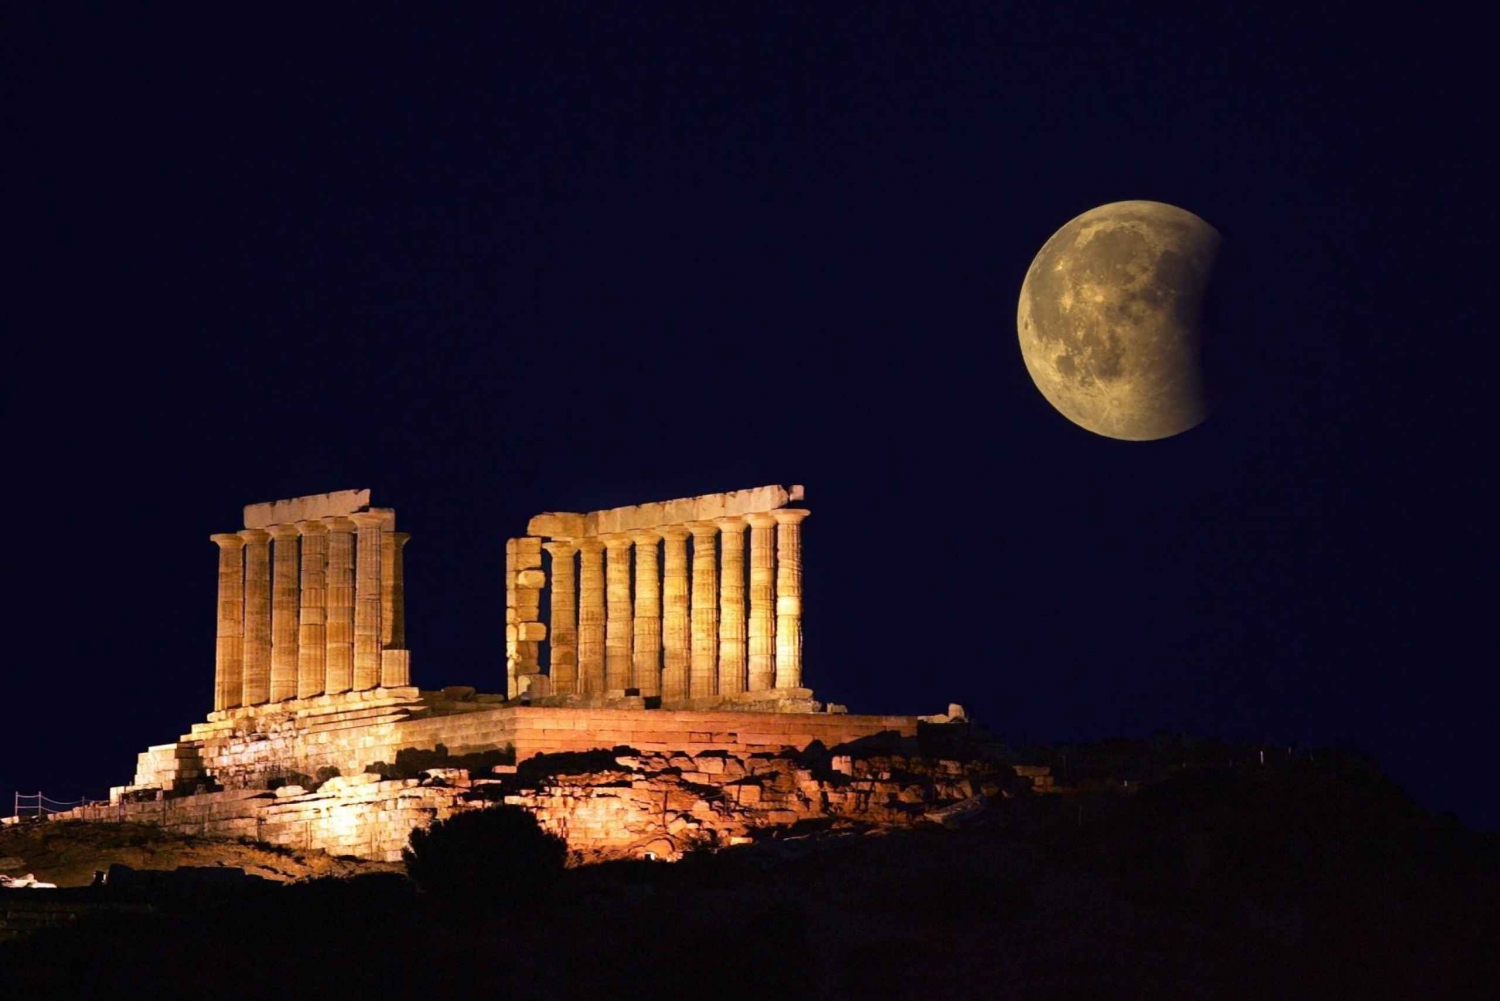 Athènes à Sounio : Exploration du temple de Poséidon (4 heures)